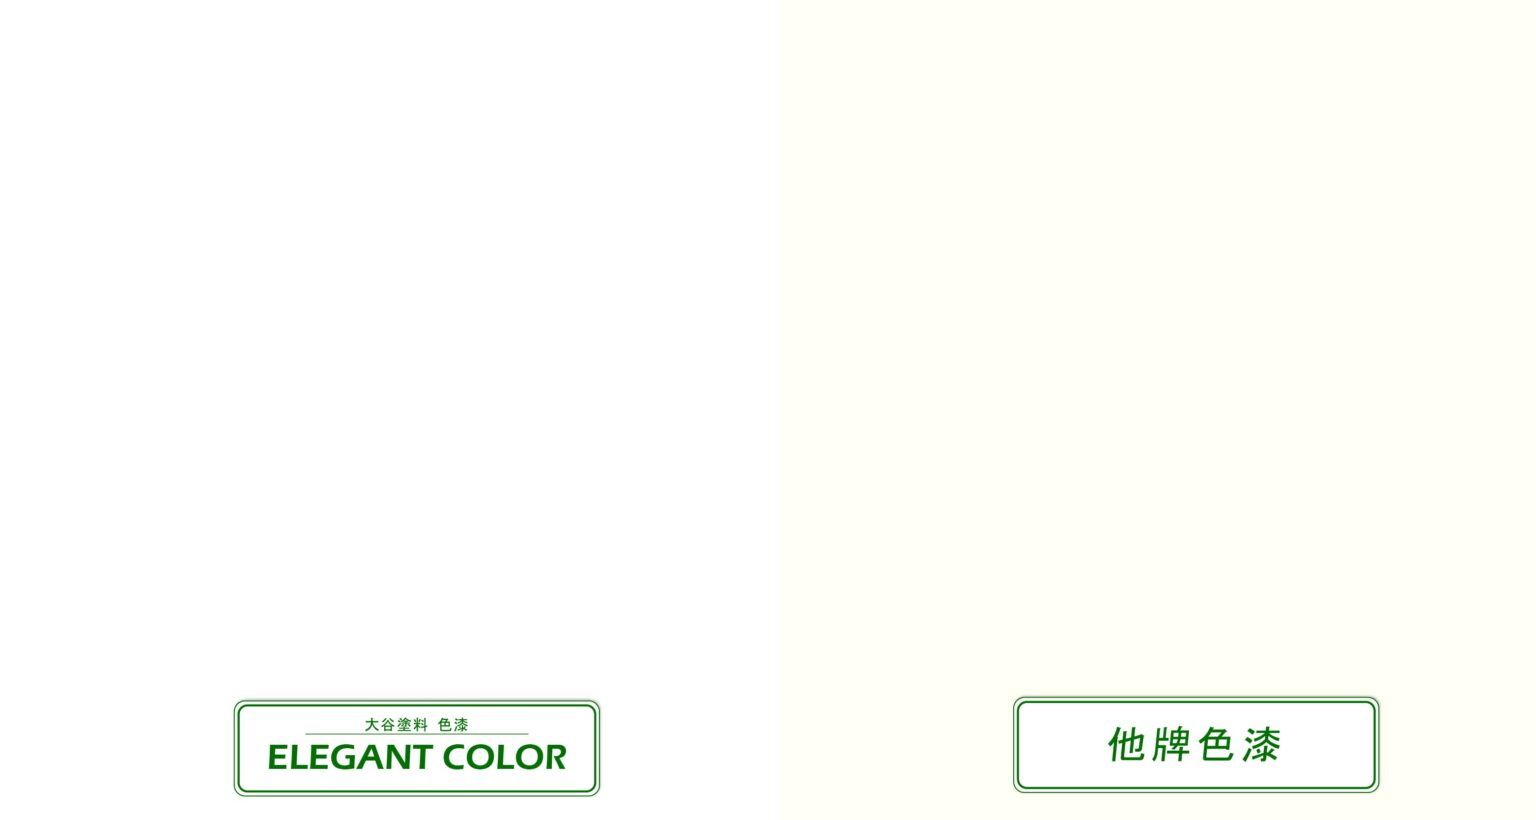 不黃變測試結果，左方木板塗裝大谷PU色漆ELEGANT COLOR 白色，無產生黃變；右方使用他牌色漆，產生黃變。